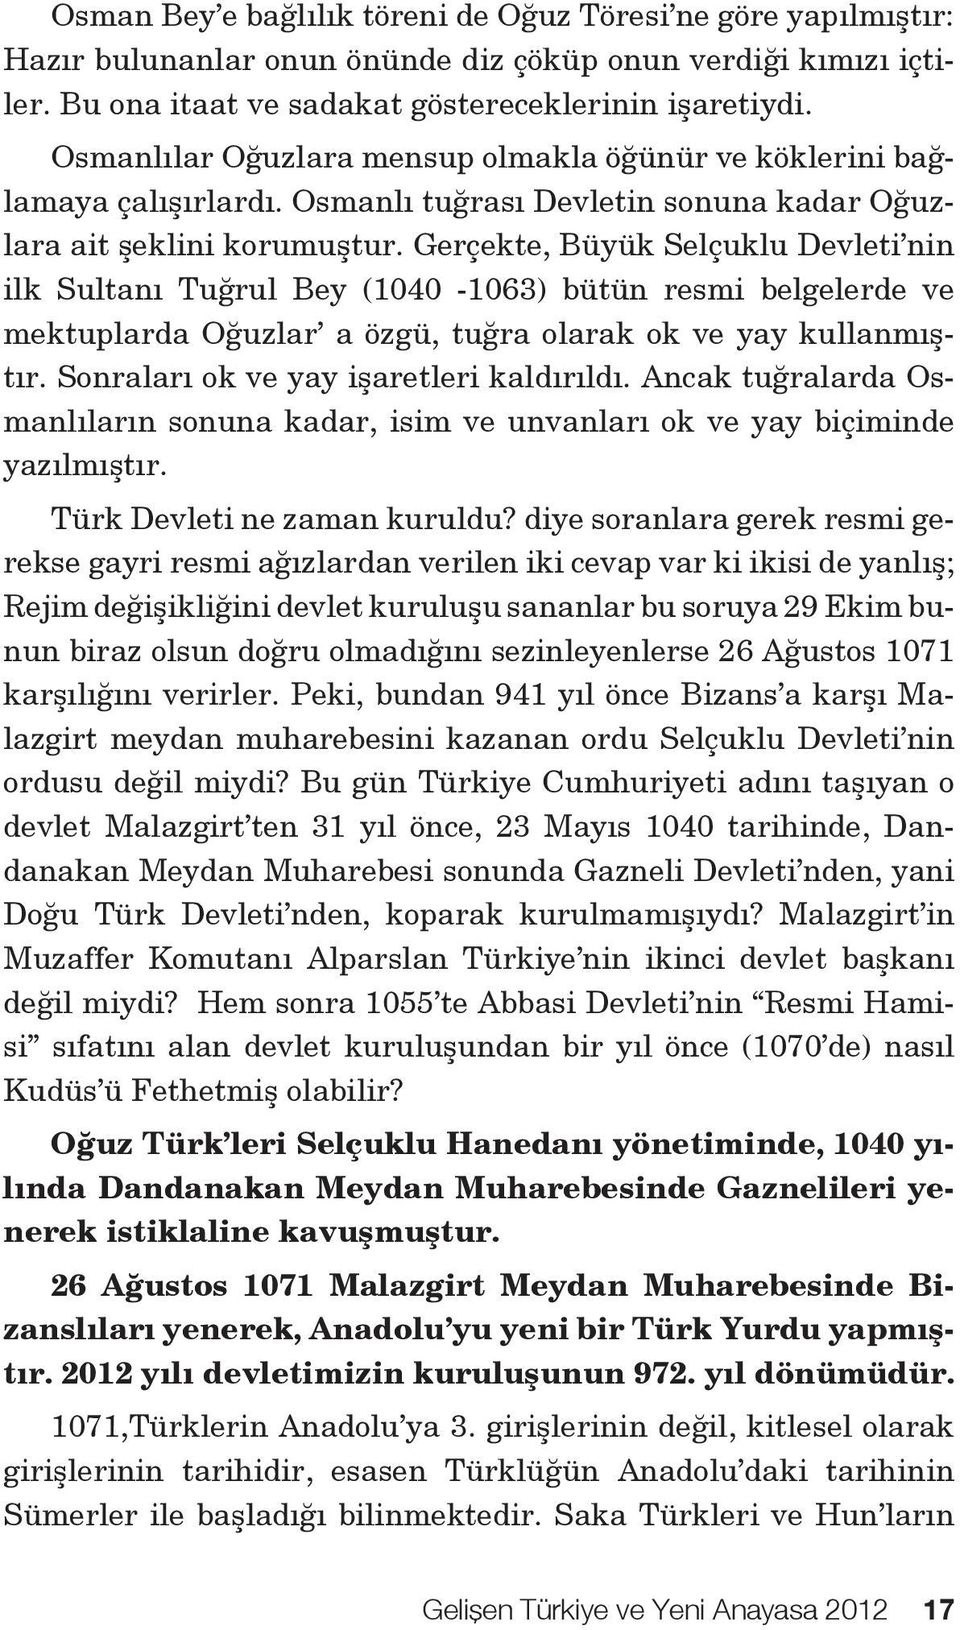 Gerçekte, Büyük Selçuklu Devleti nin ilk Sultanı Tuğrul Bey (1040-1063) bütün resmi belgelerde ve mektuplarda Oğuzlar a özgü, tuğra olarak ok ve yay kullanmıştır.